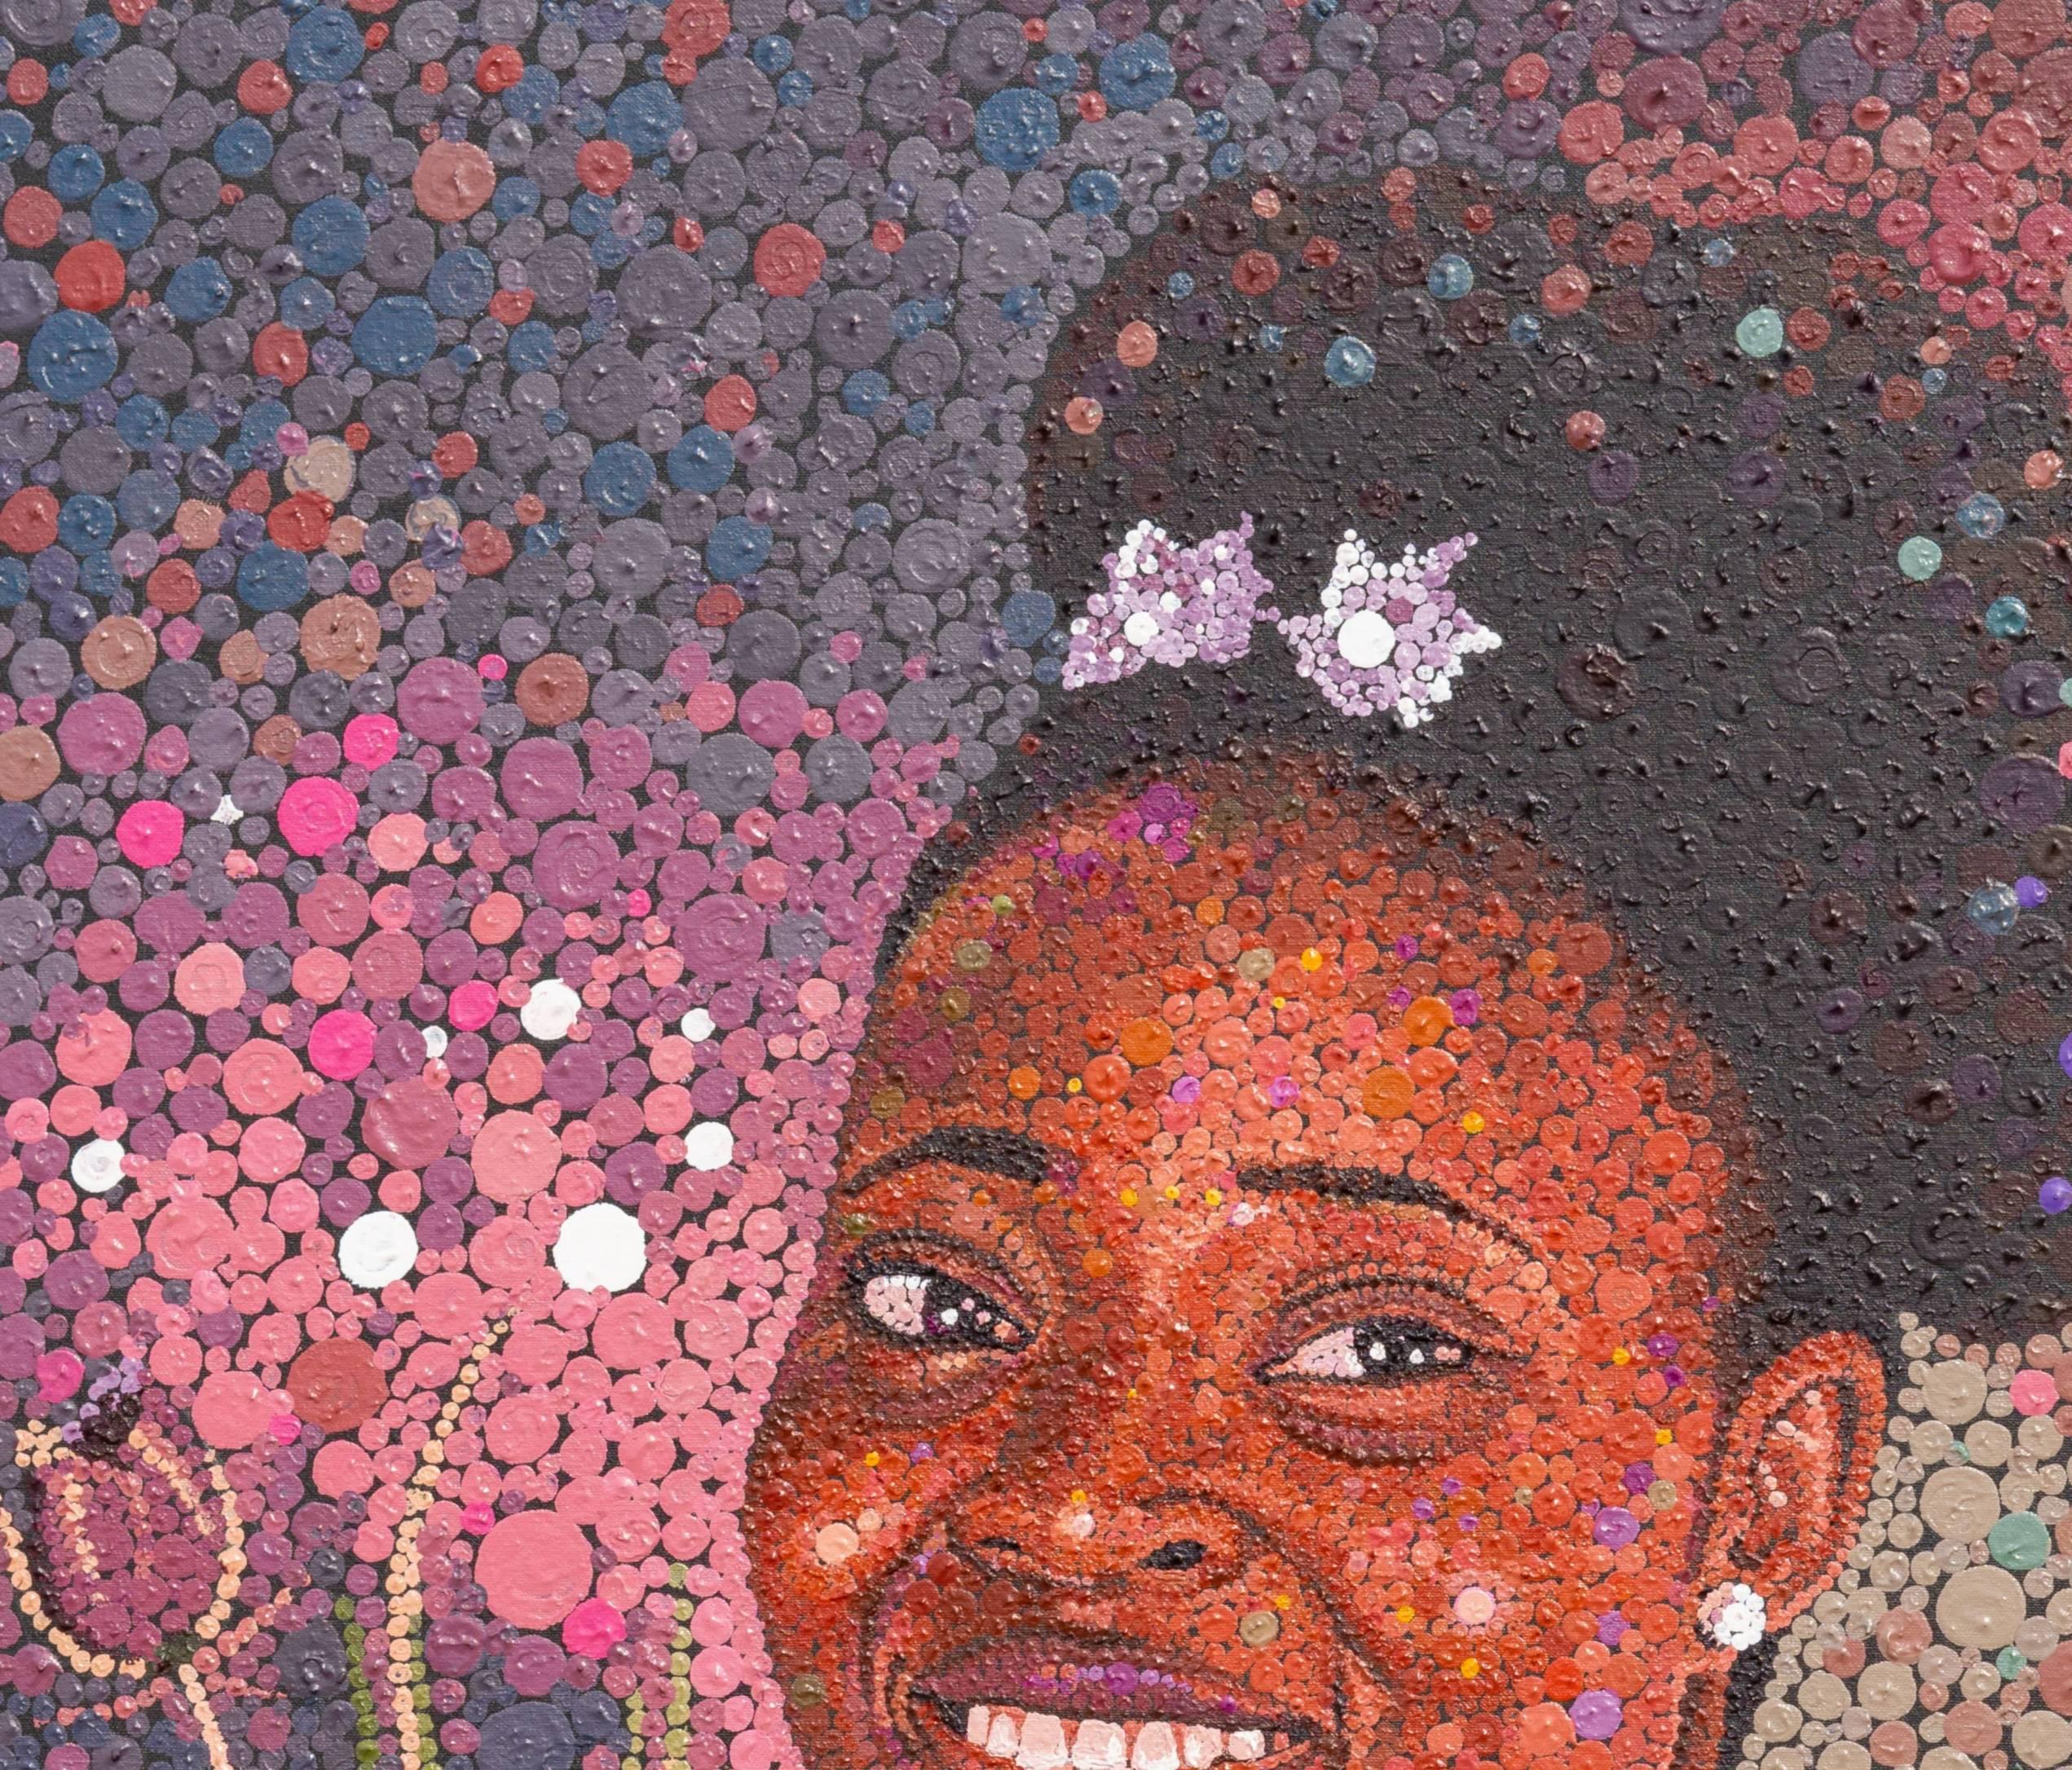 Duchess - Painting by Idowu Emmanuel 